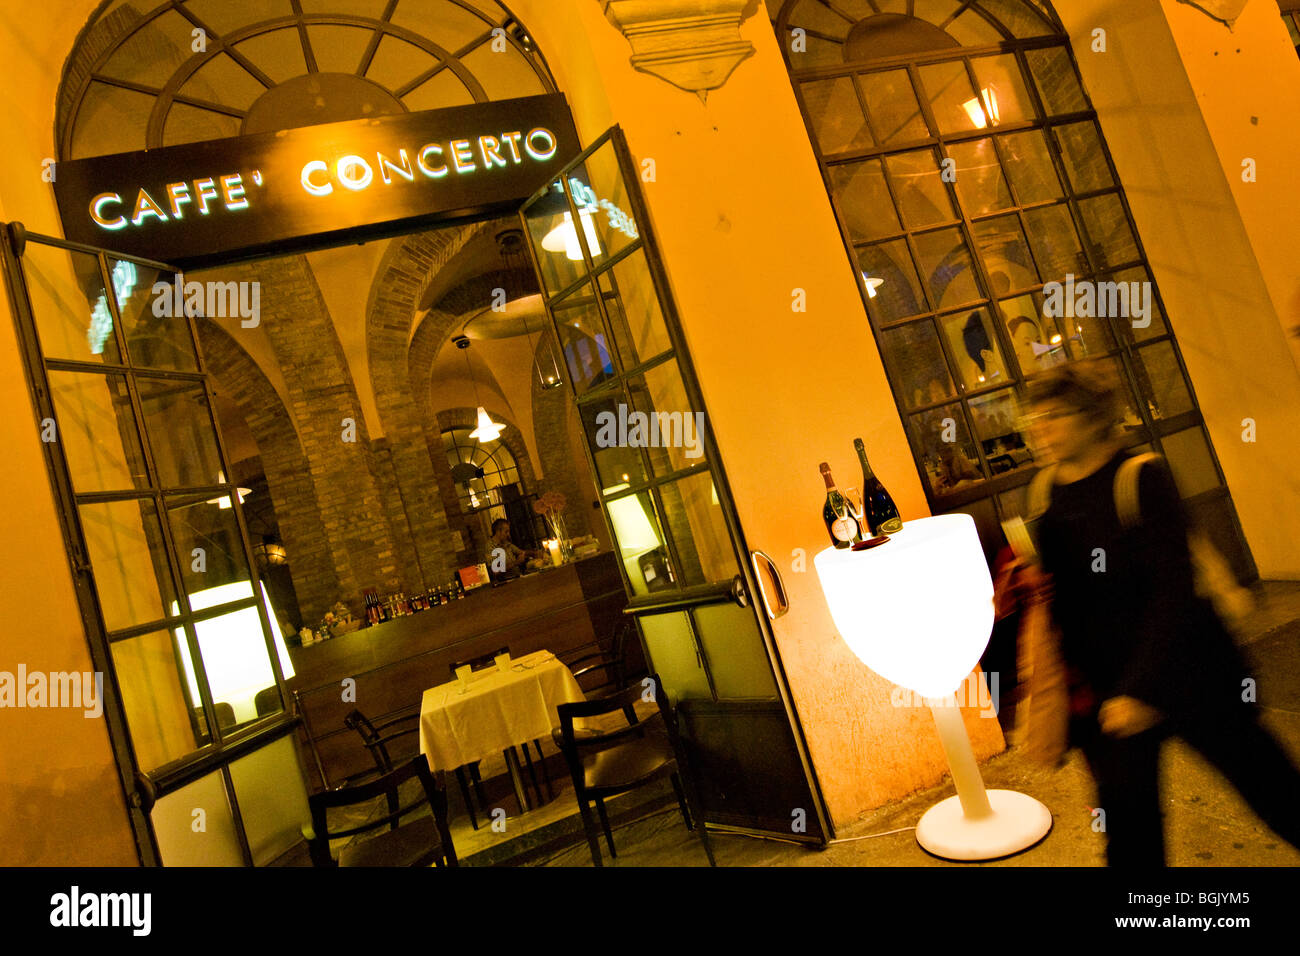 Caffè Concerto, Piazza Grande, Modena, Italy Stock Photo